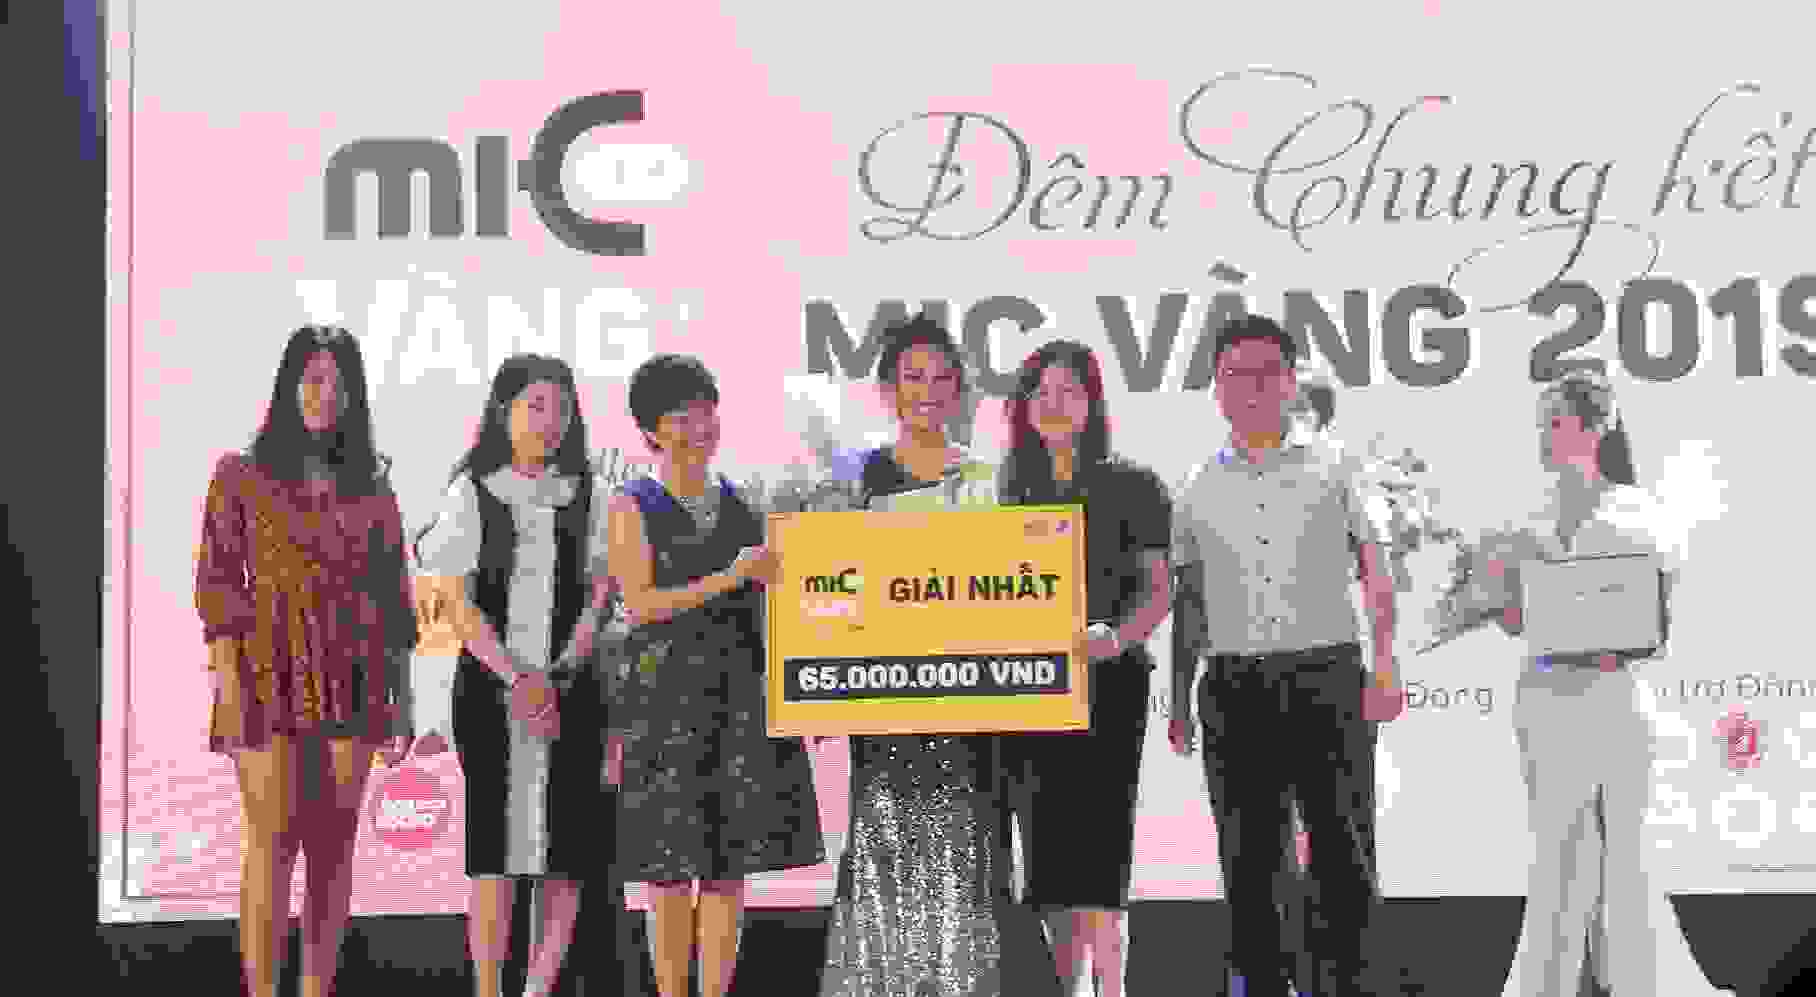 Sinh viên Nguyễn Ngọc Linh giành giải Nhất Mic Vàng 2019